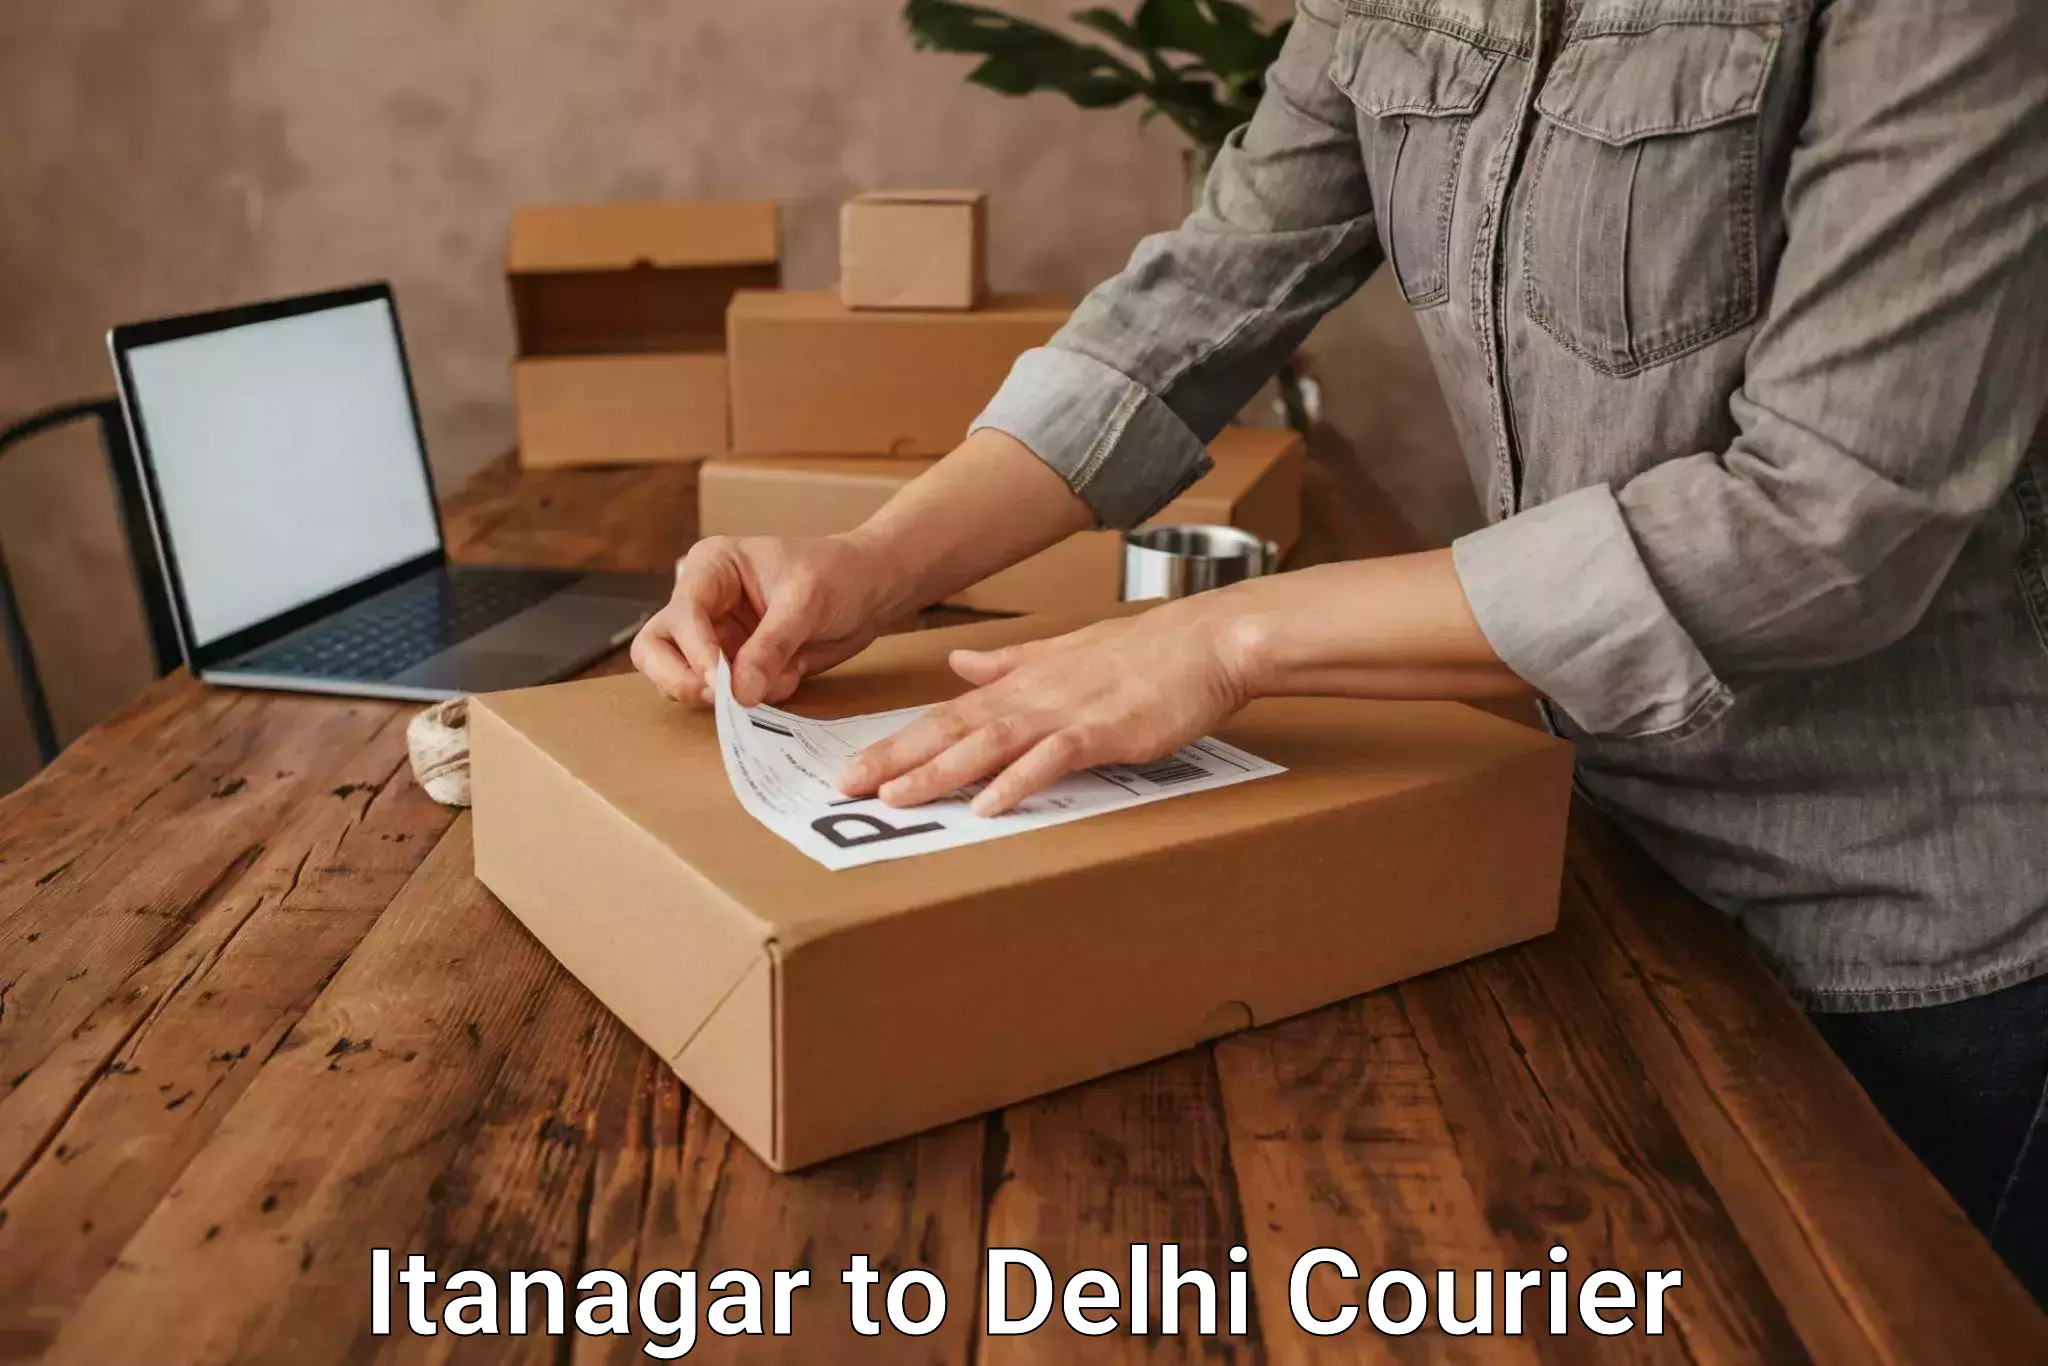 Nationwide parcel services Itanagar to Delhi